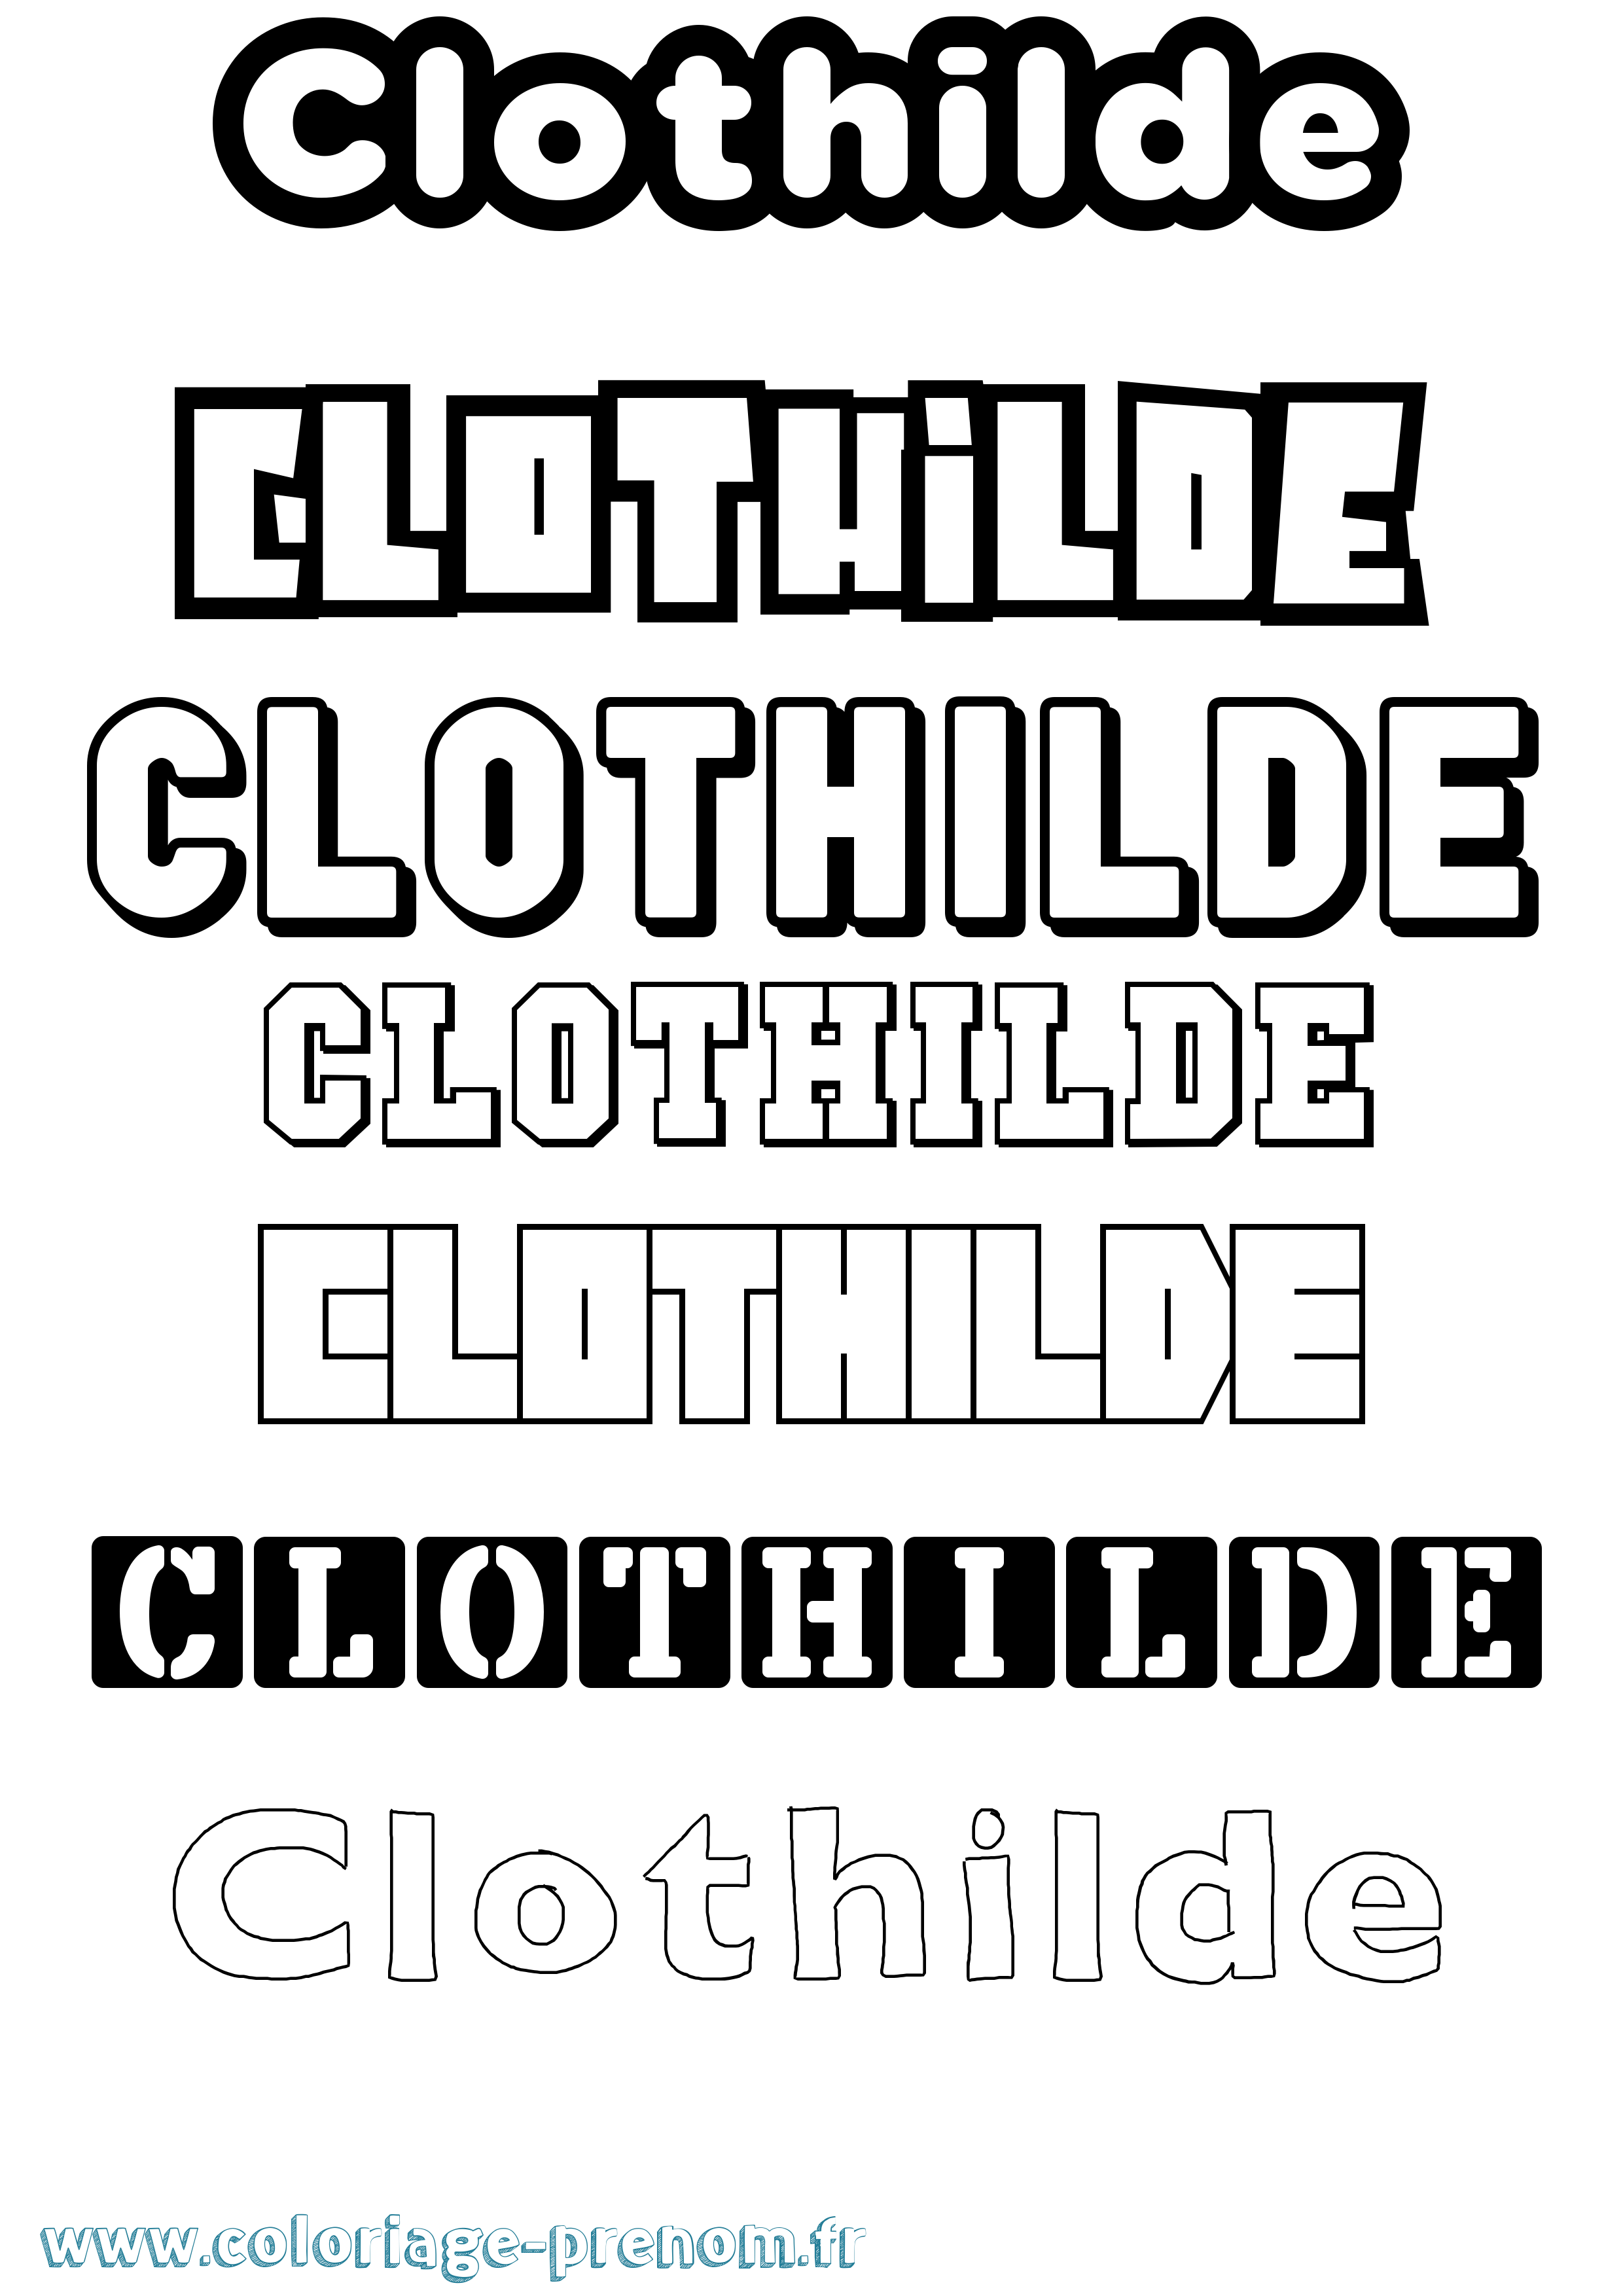 Coloriage prénom Clothilde Simple